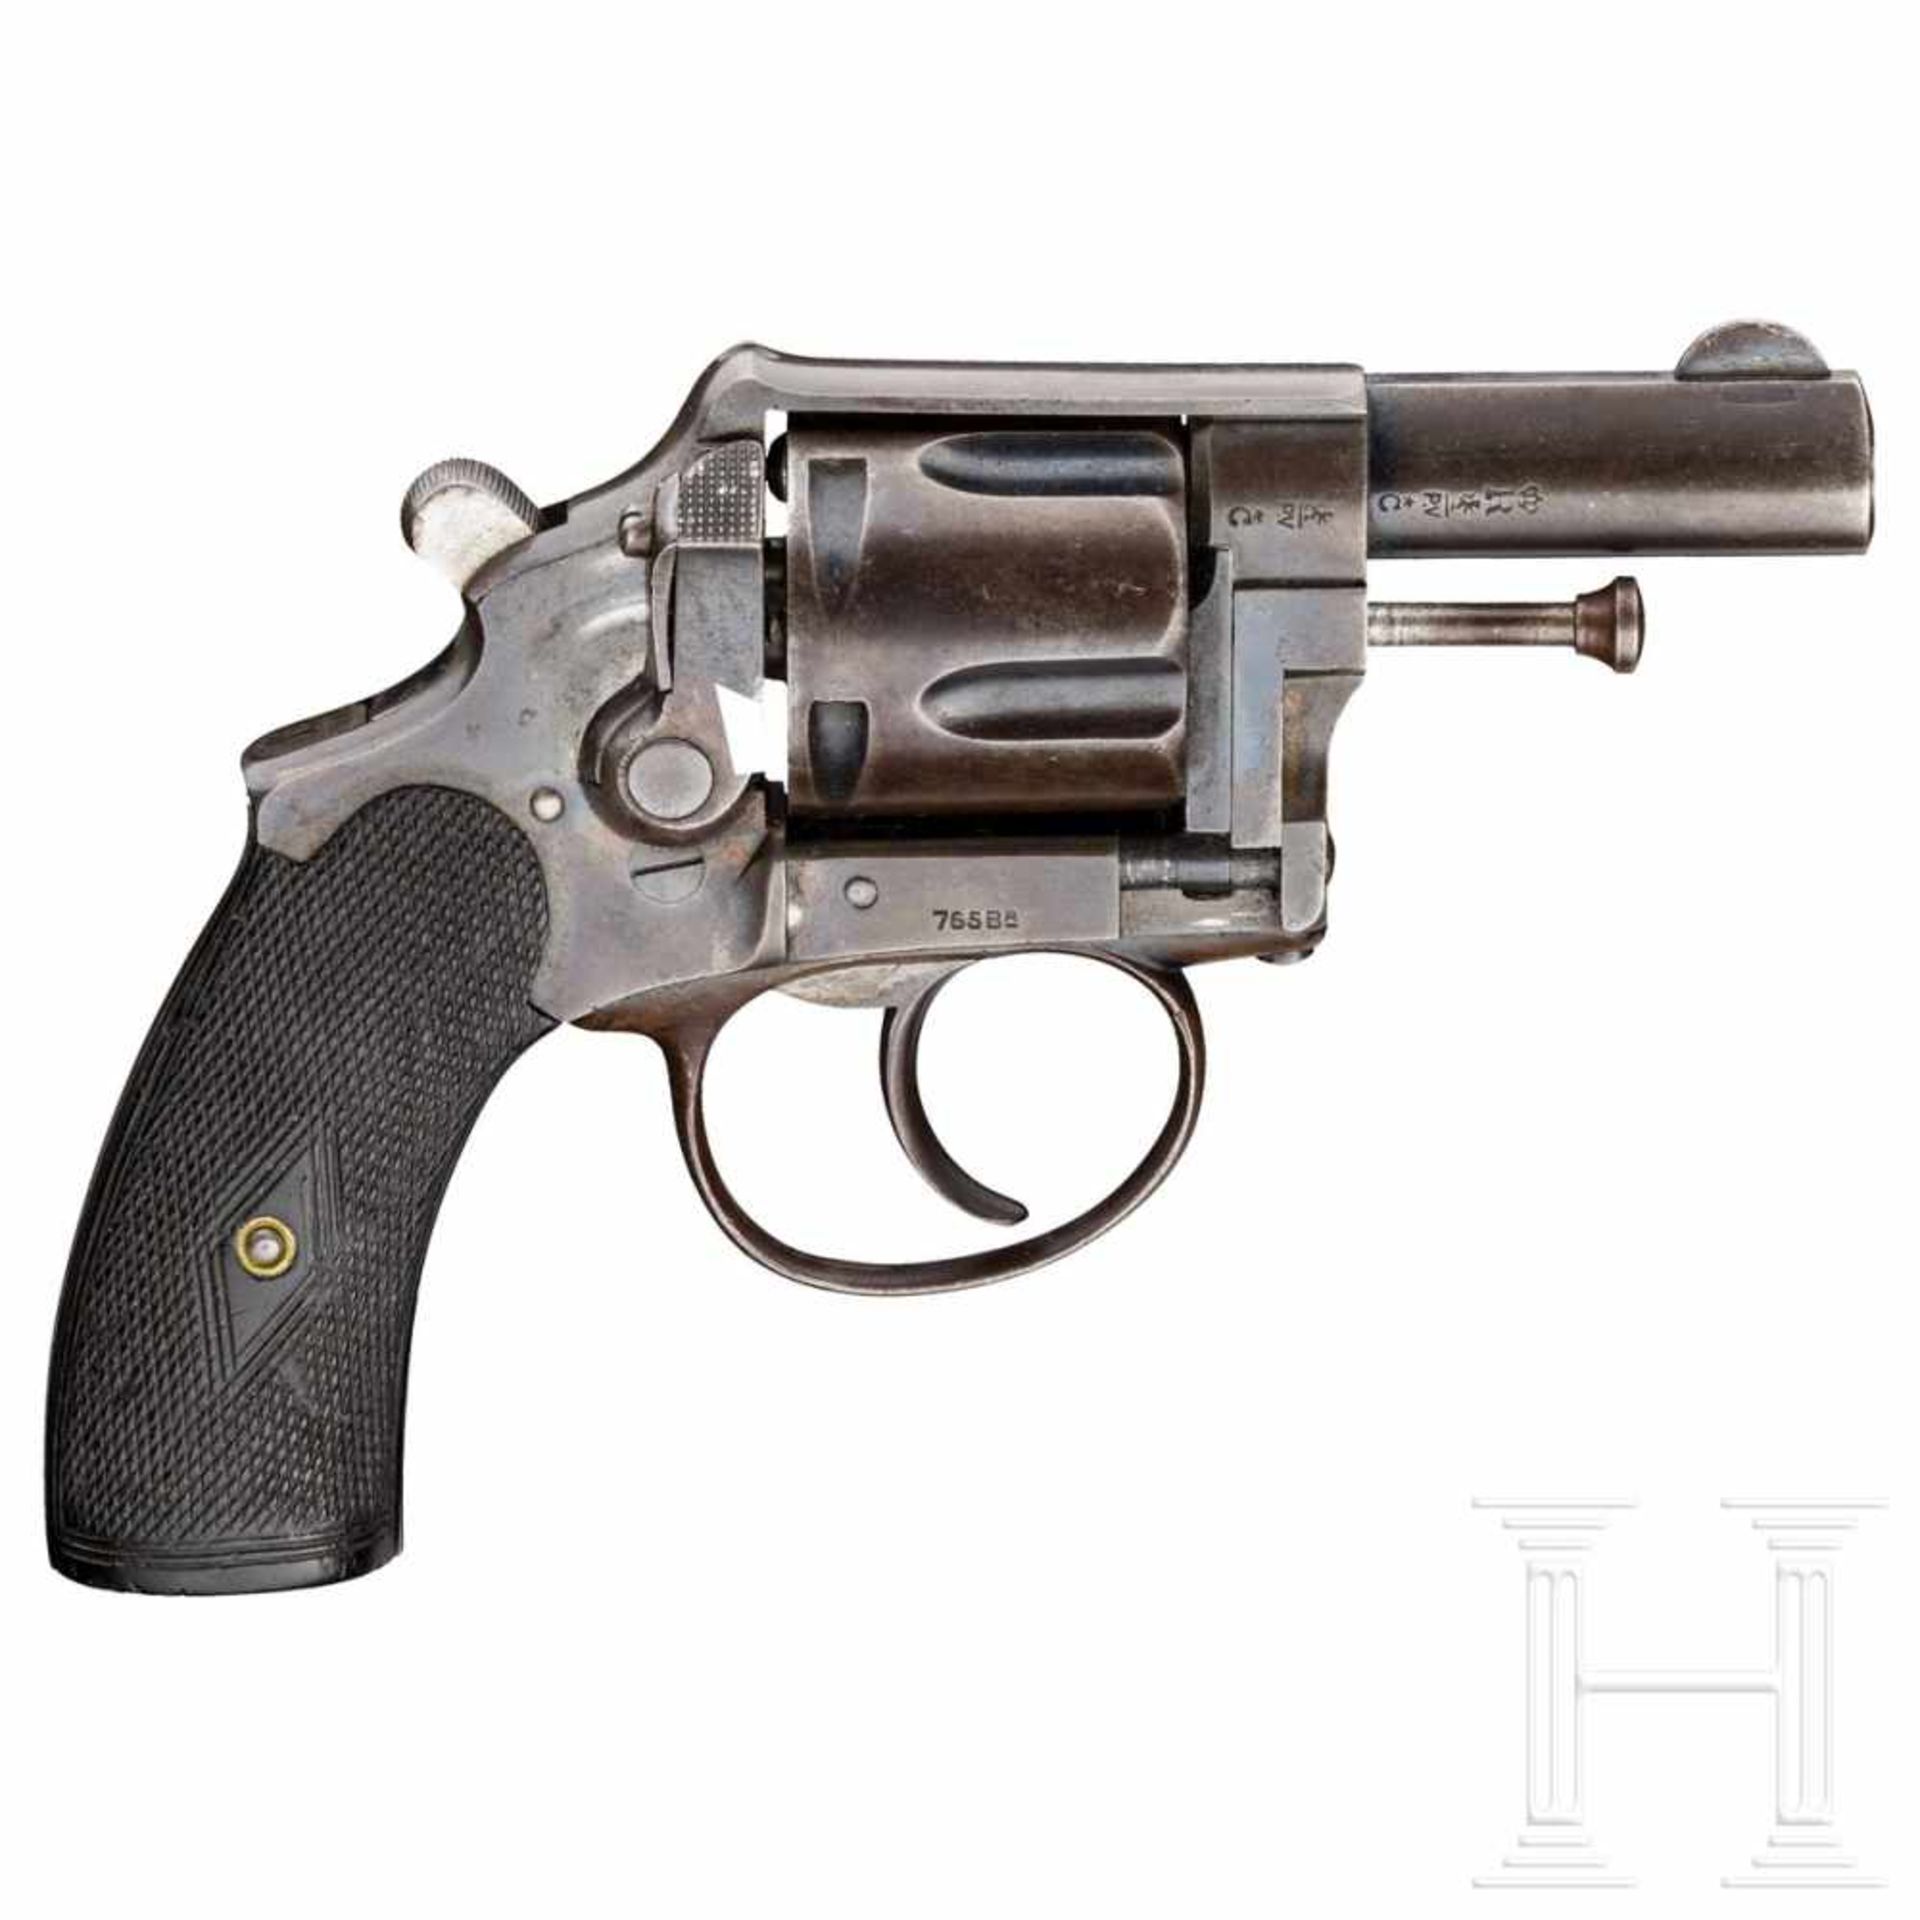 Belgien - Revolver Oury, Polizei, um 1910